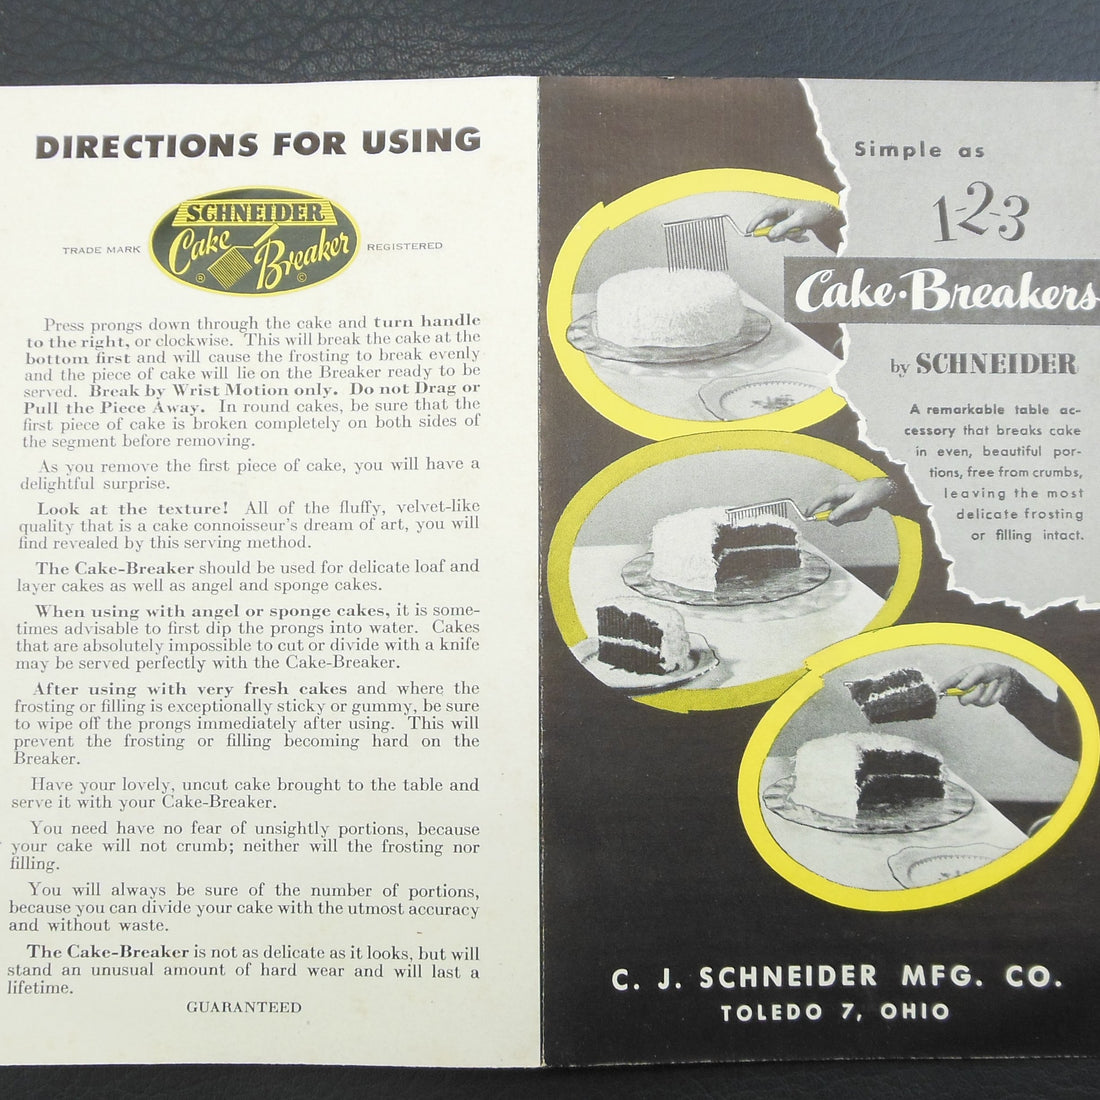 This is the instruction sheet for the vintage C.J. Schneider cake breaker utensil.